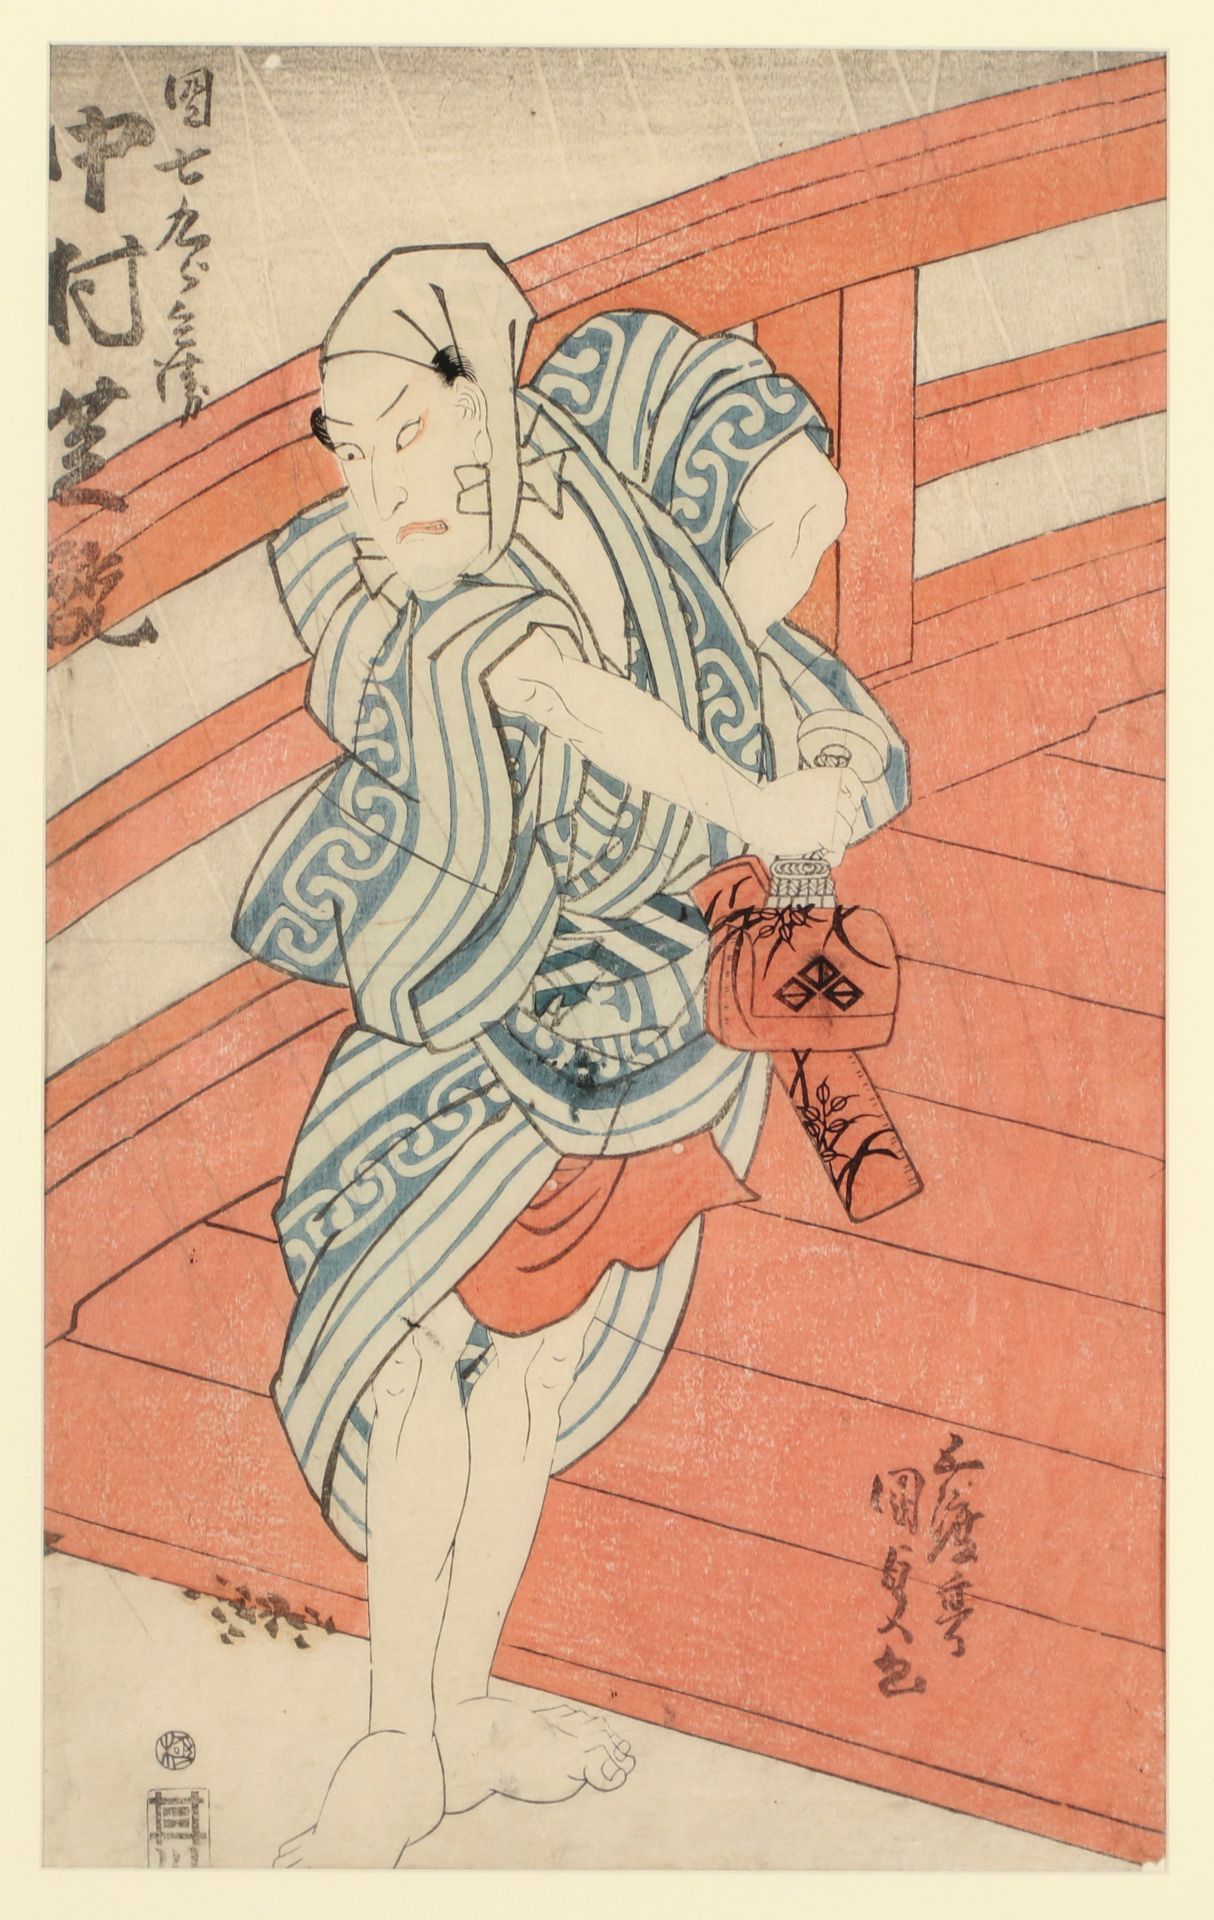 Gototei Kunisada - Image 2 of 2